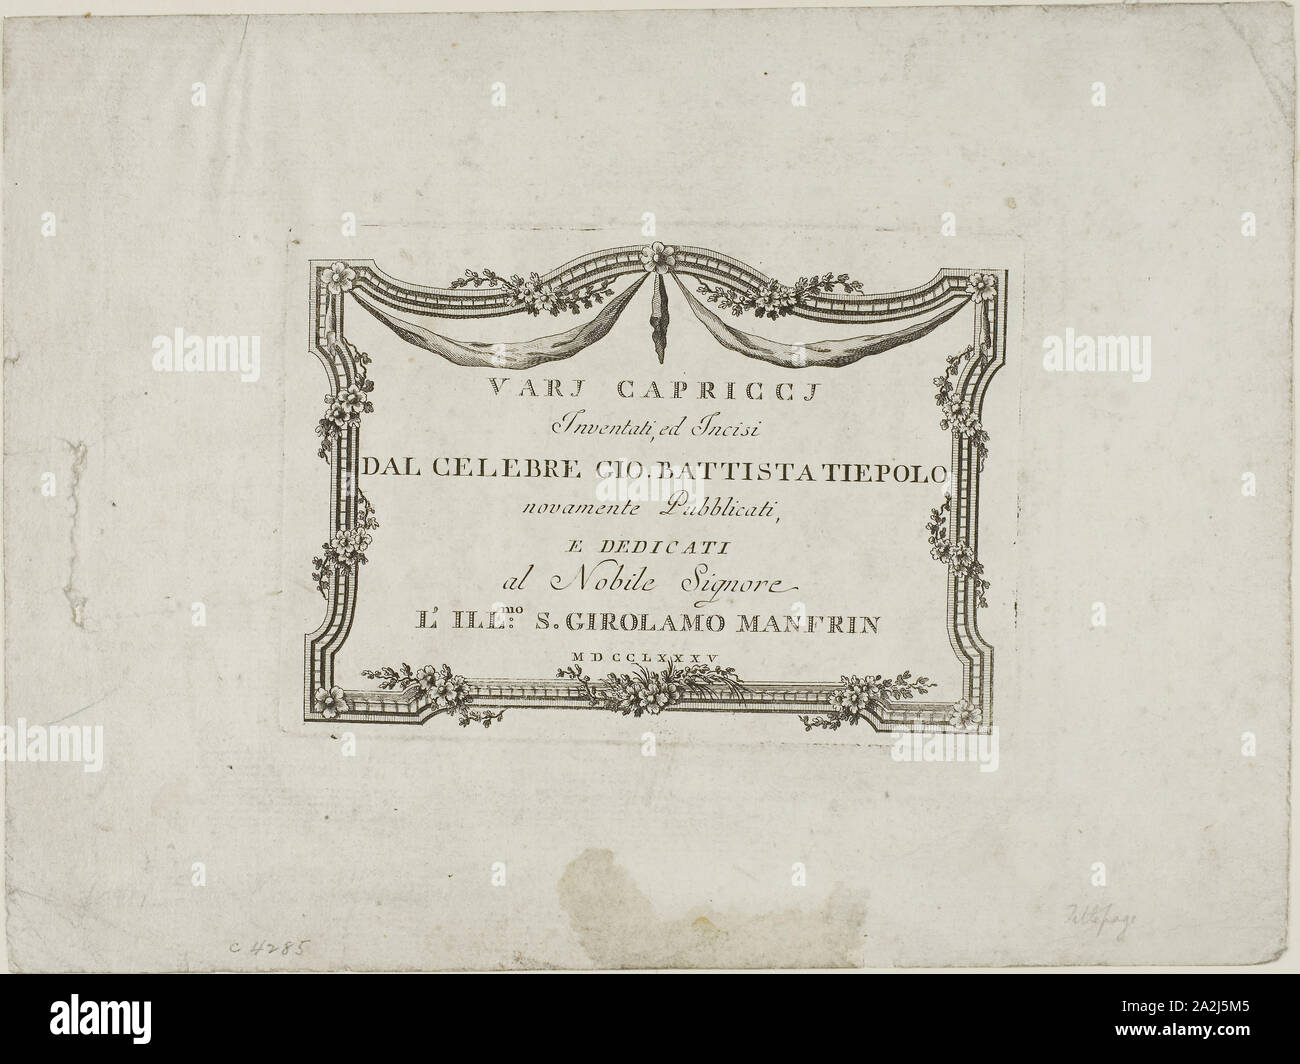 Frontespizio da Capricci, pubblicato 1785, Giambattista Tiepolo, Italiano, 1696-1770, Italia, incisione su carta, 114 x 165 mm Foto Stock